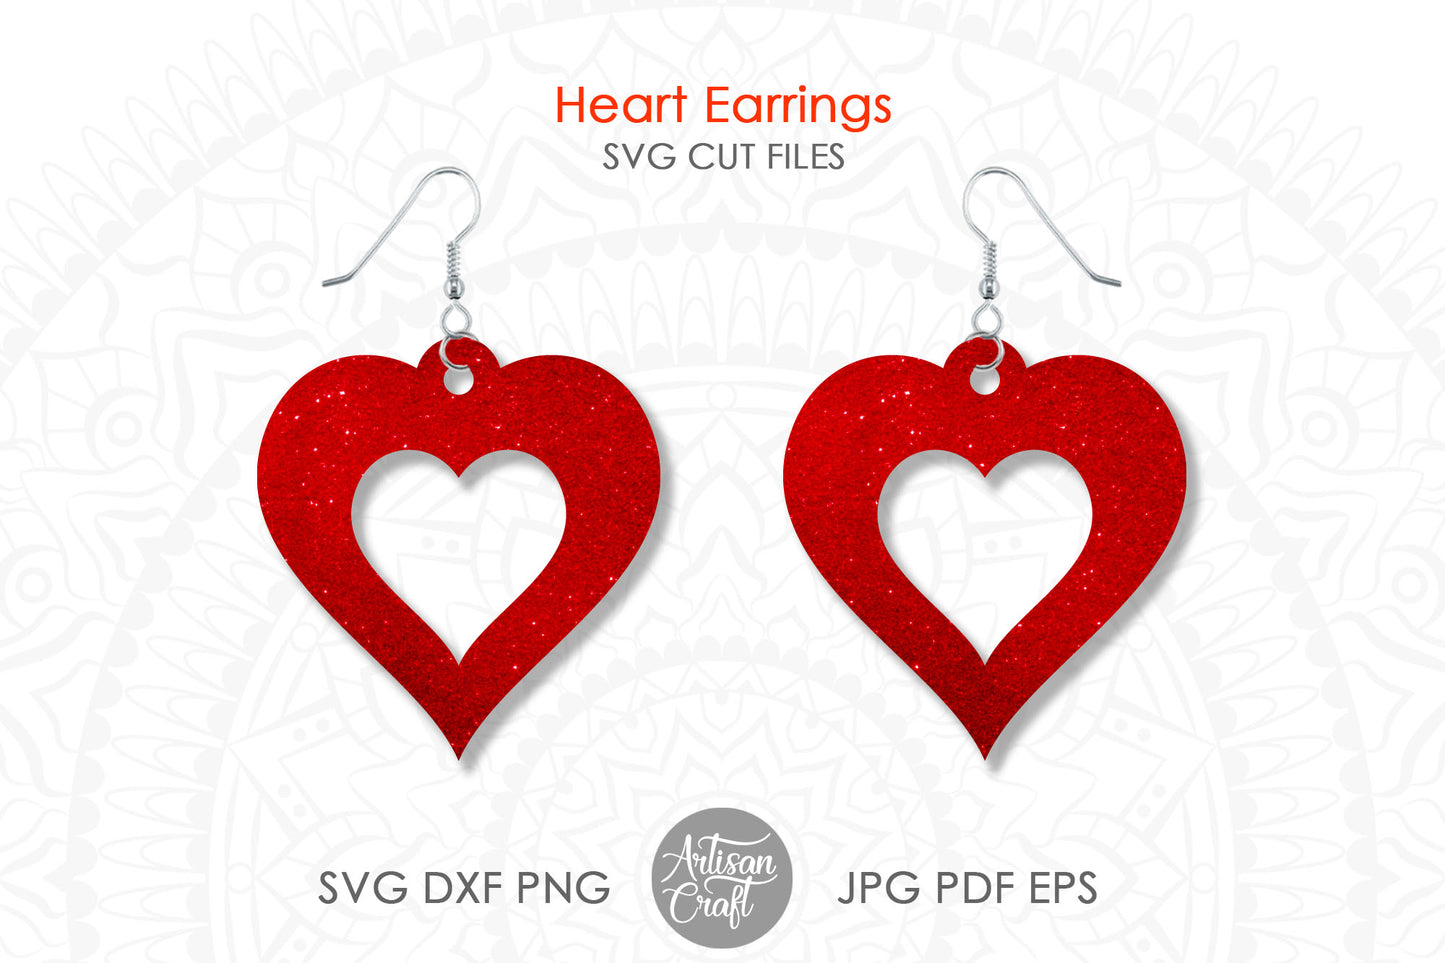 Heart earrings SVG, Valentine Earrings SVG